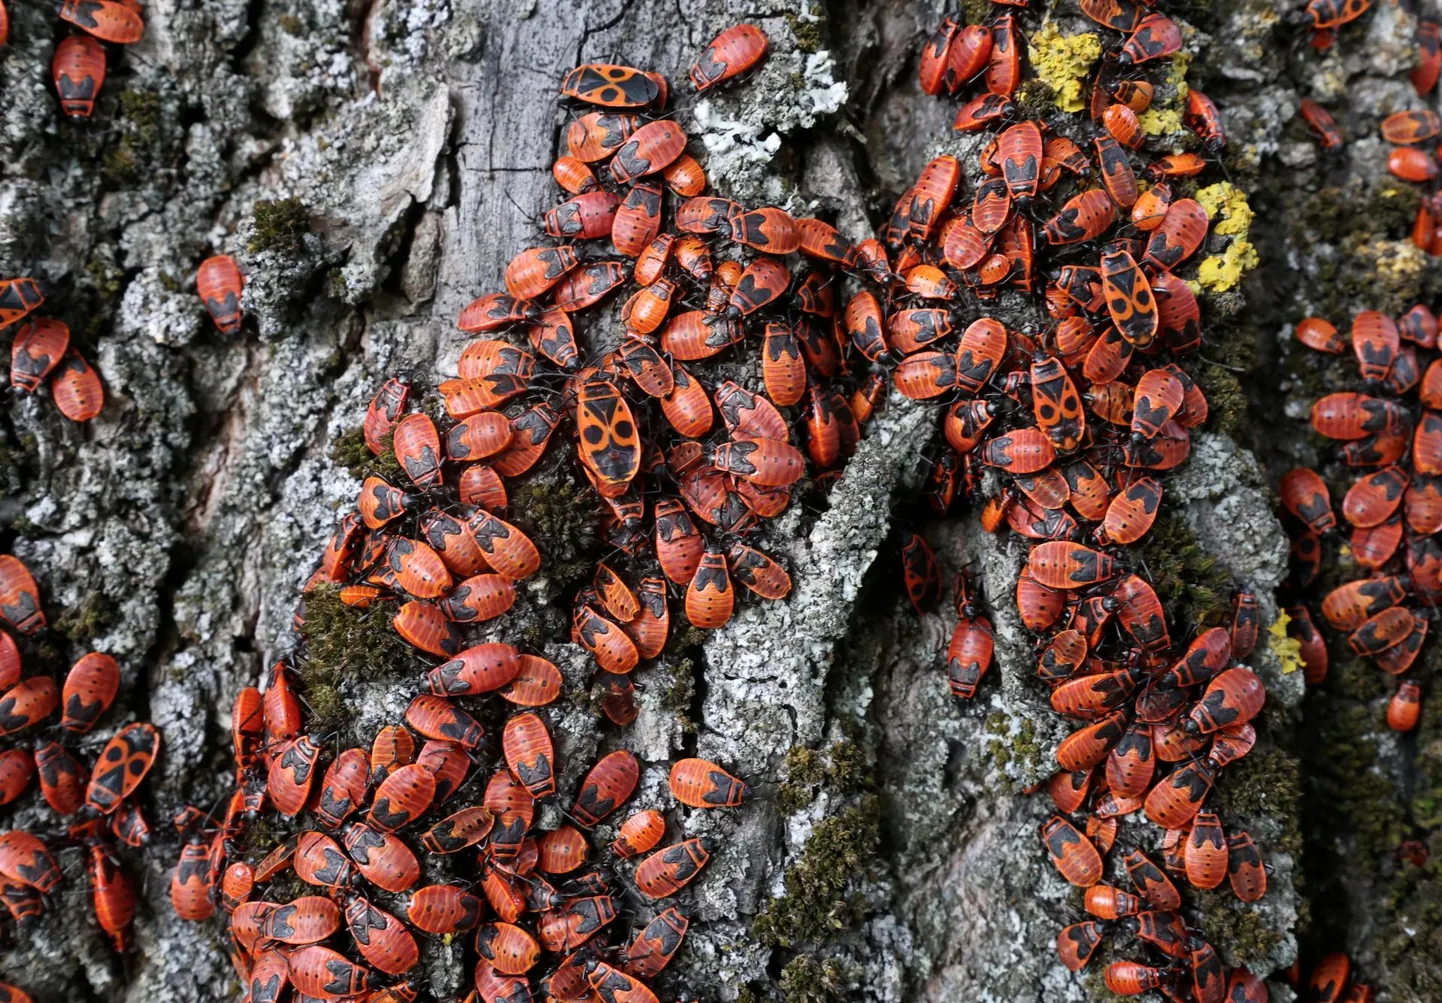 В понедельник днем ​​улица Реммельга в Аннелинне районе кишила бесчисленными красными жуками как на земле, так и на деревьях.